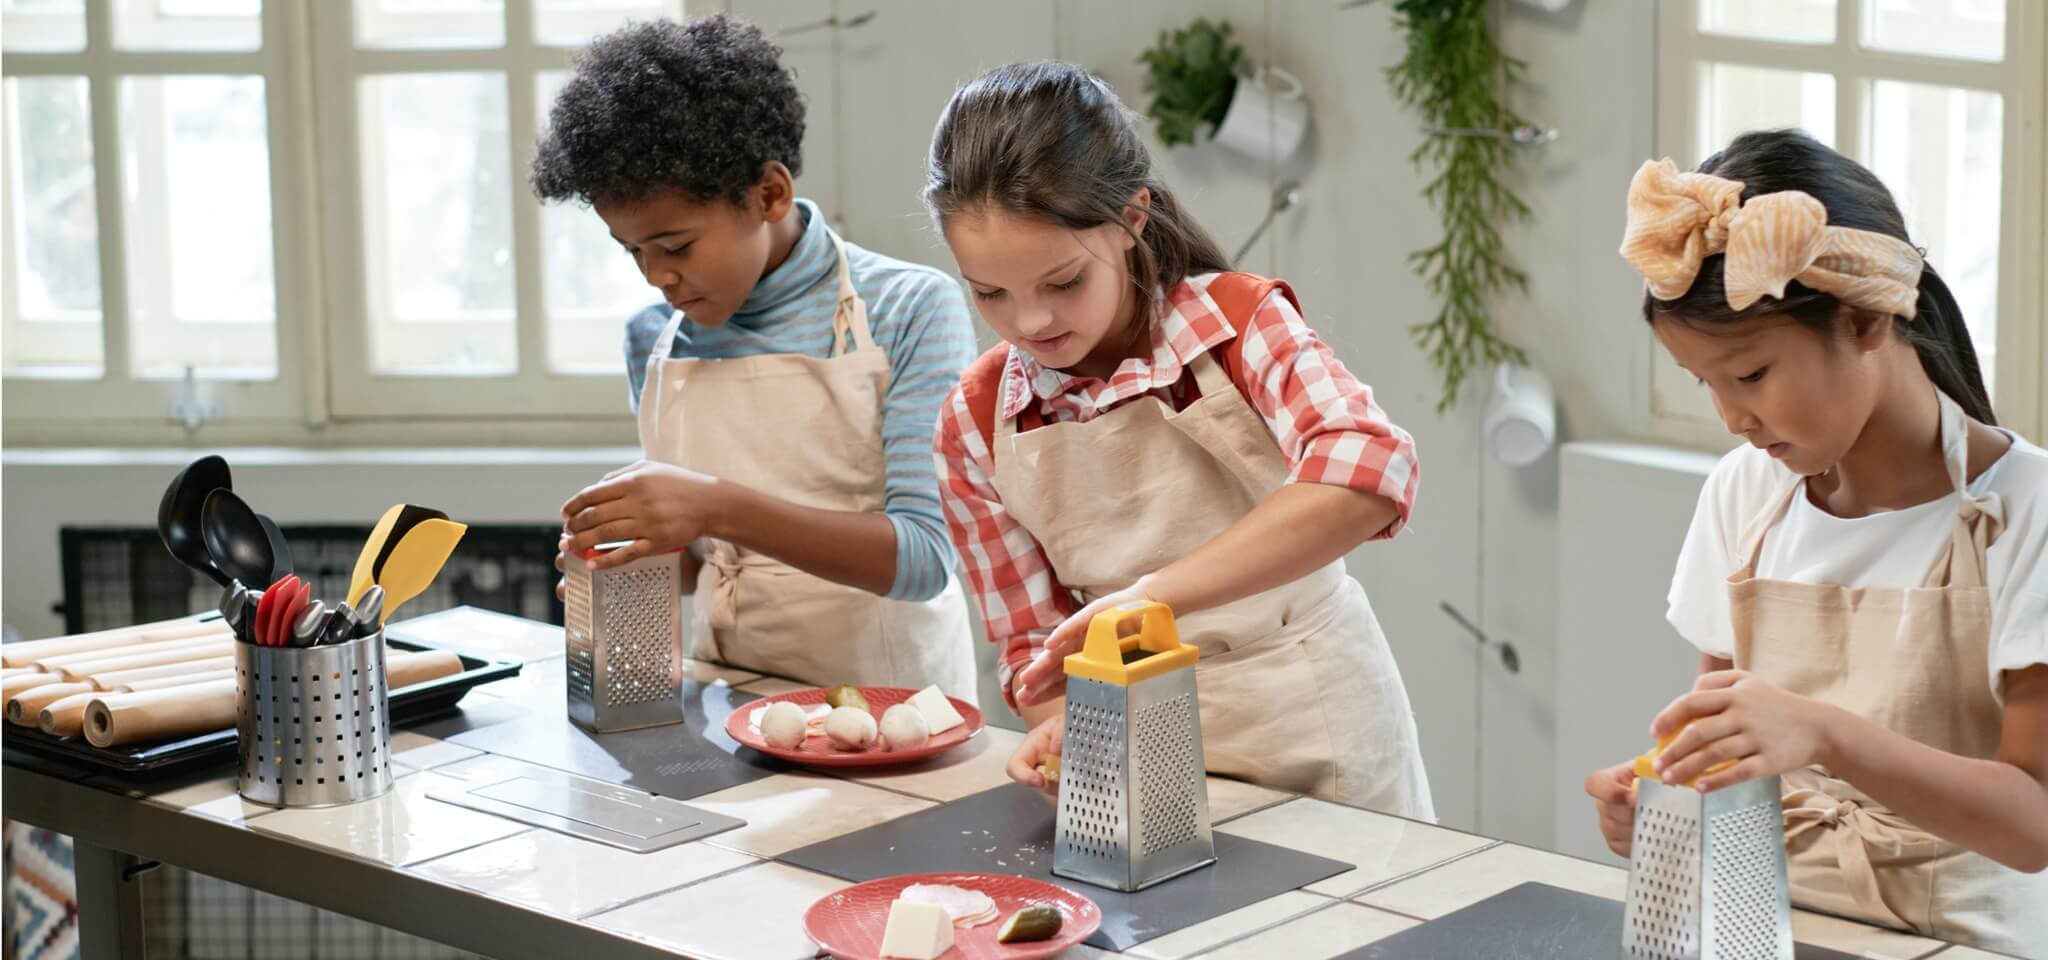 Nachhaltiger Kochworkshop für Kinder - Sustainable cooking workshop for children